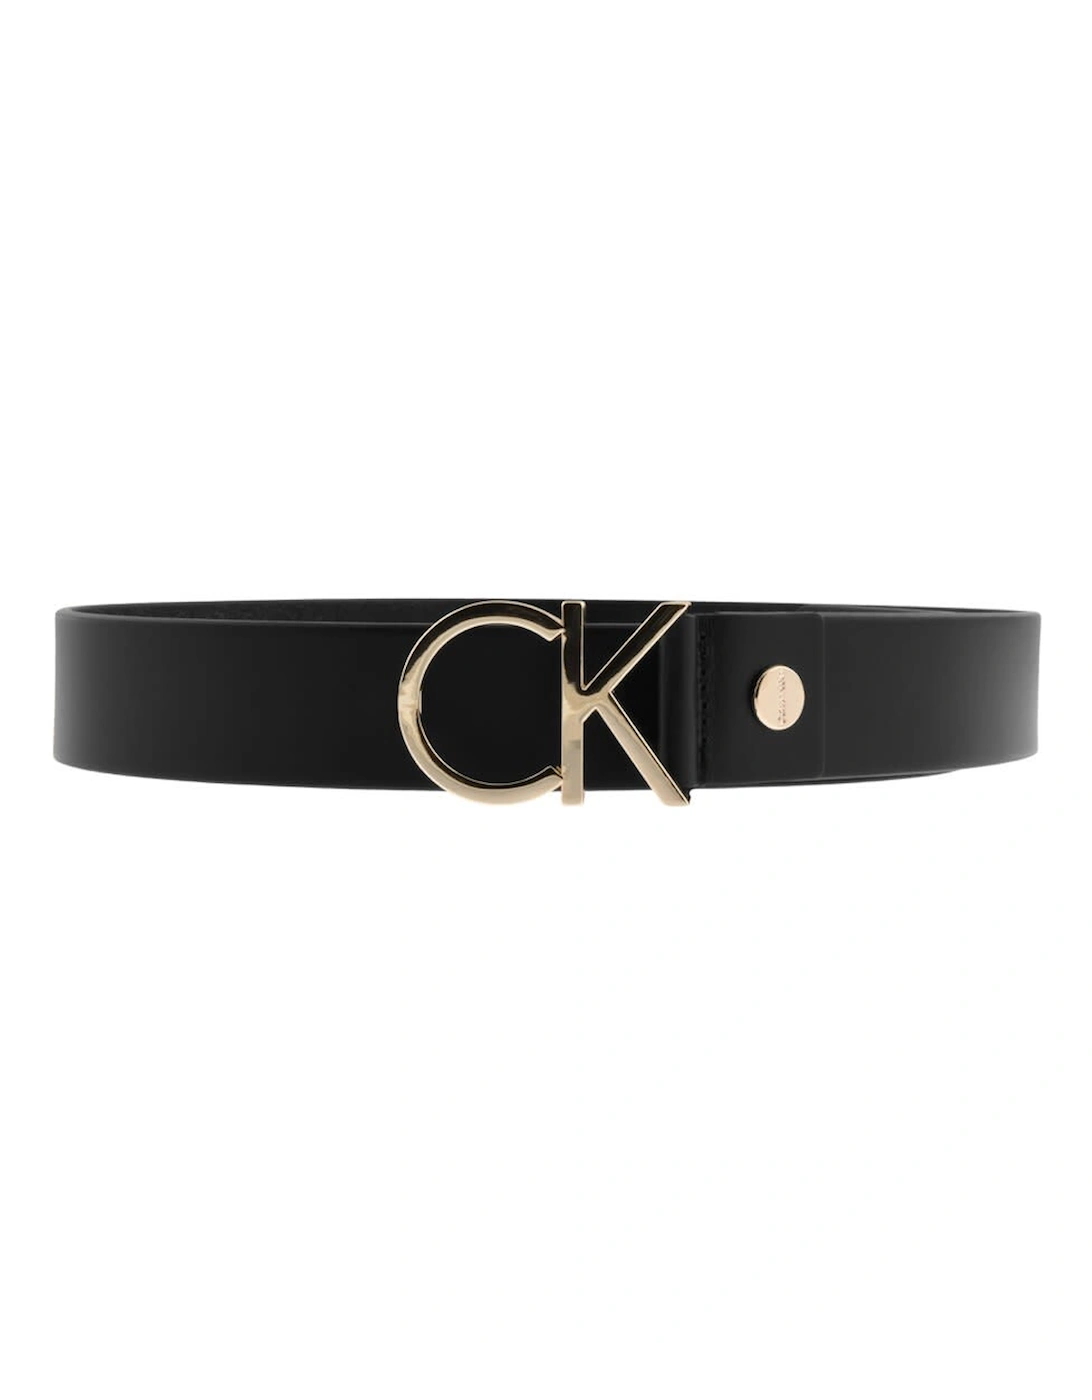 CK Logo Belt Black, 4 of 3